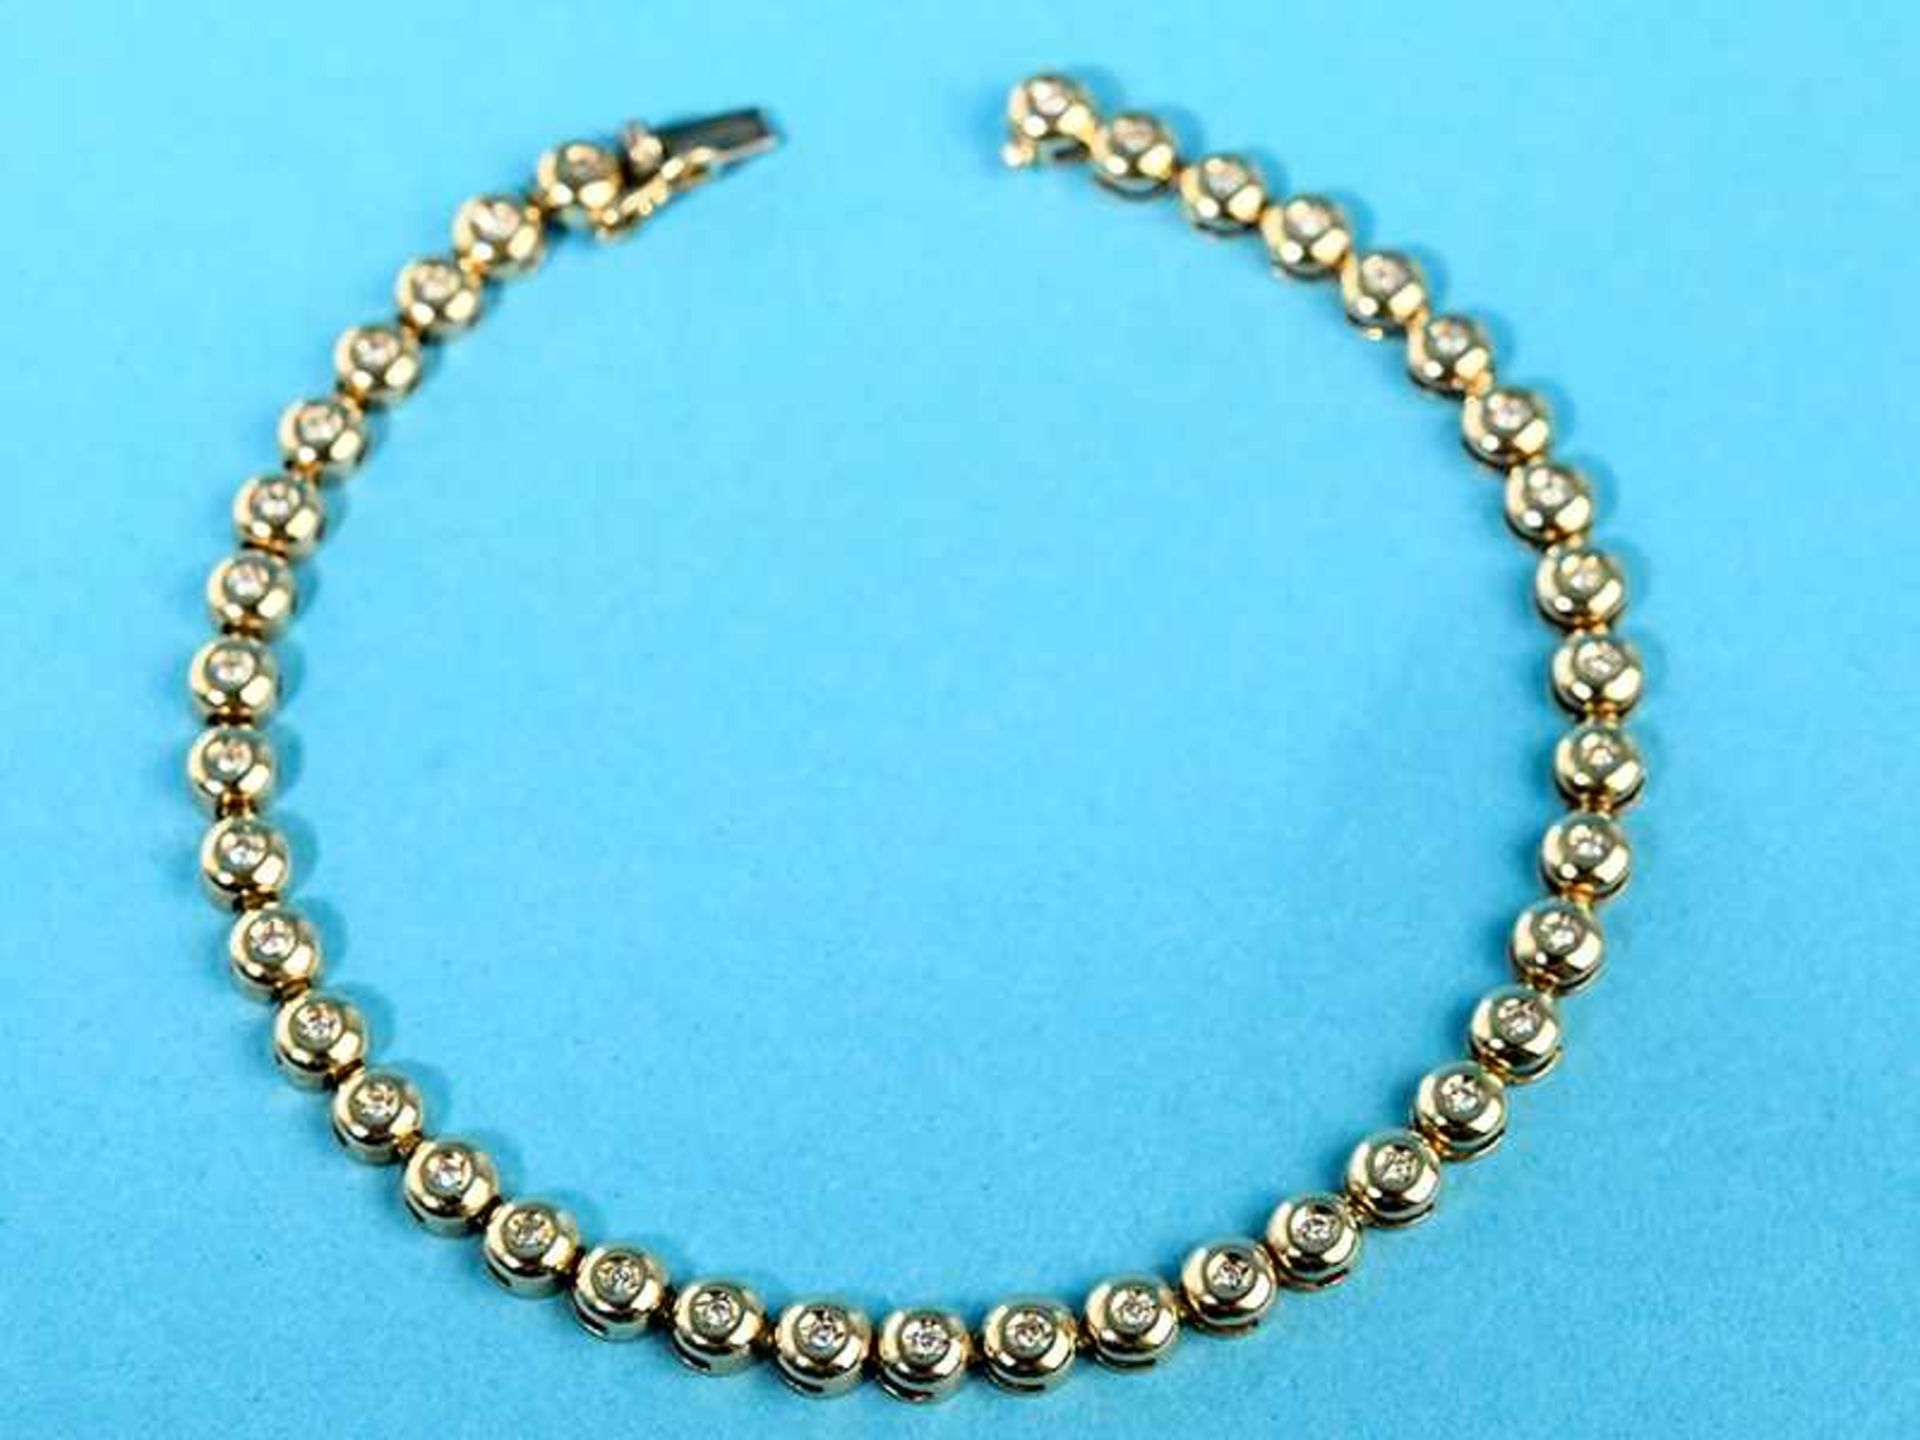 Tennisarmband mit 39 kleinen Diamanten, zusammen ca. 0,3 ct, 20. Jh. 585/- Gelbgold. Gesamtgewicht